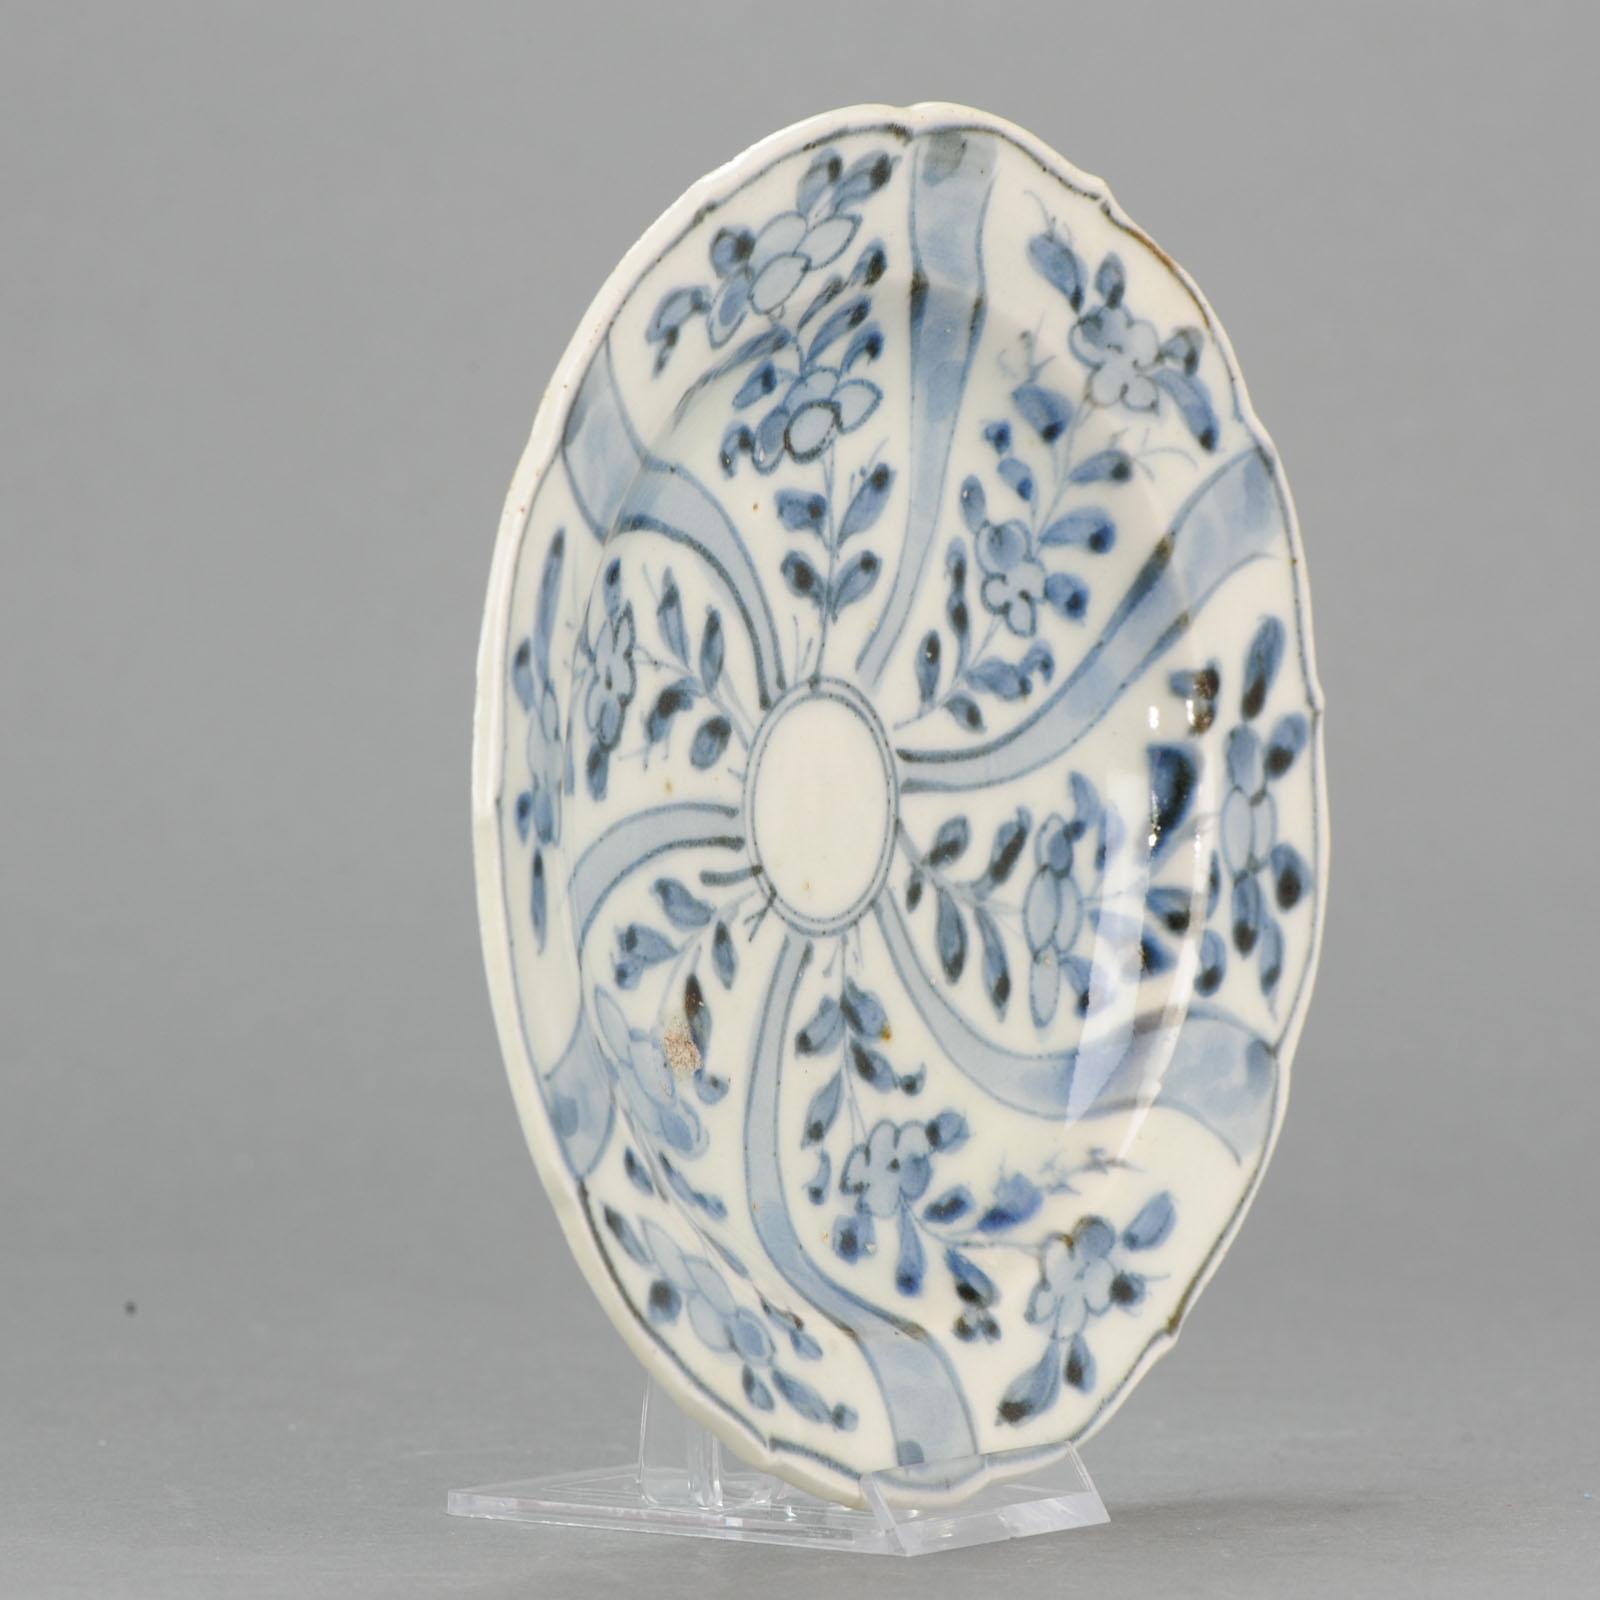 Ancienne assiette en porcelaine chinoise Ming Tianqi Transitional China Plate Flowers, 17ème siècle

Une assiette très joliment décorée.

Informations complémentaires :
MATERIAL : Porcelaine et poterie
Type : Plaques
Couleur : Bleu et